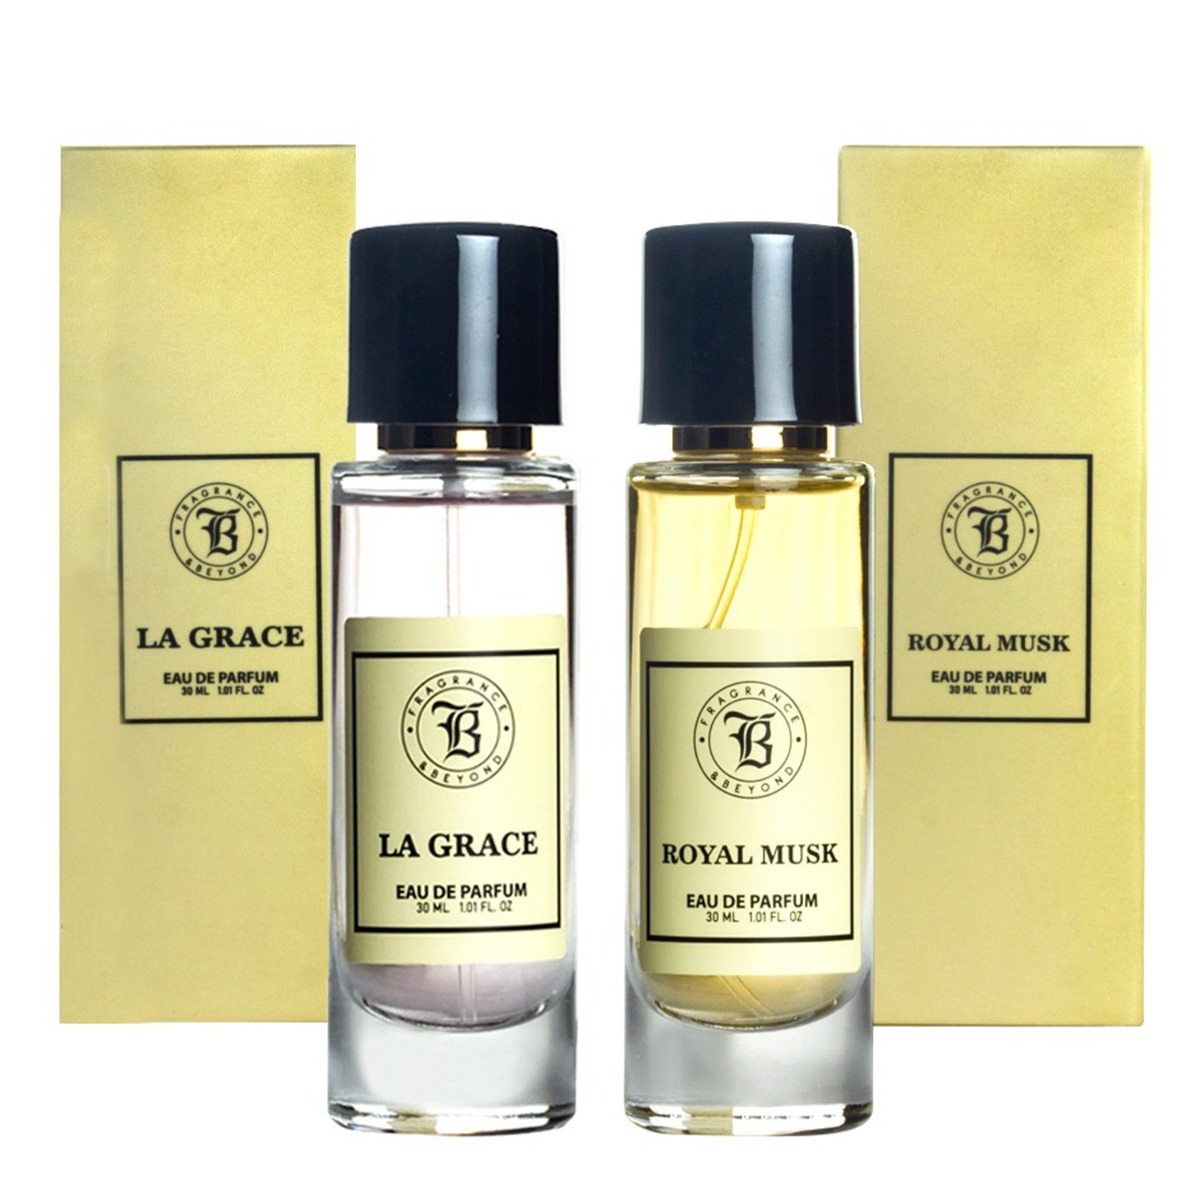 Fragrance & Beyond La Grace and Royal Musk Eau De Parfum (Perfume) Combo For Women, 30ml Each